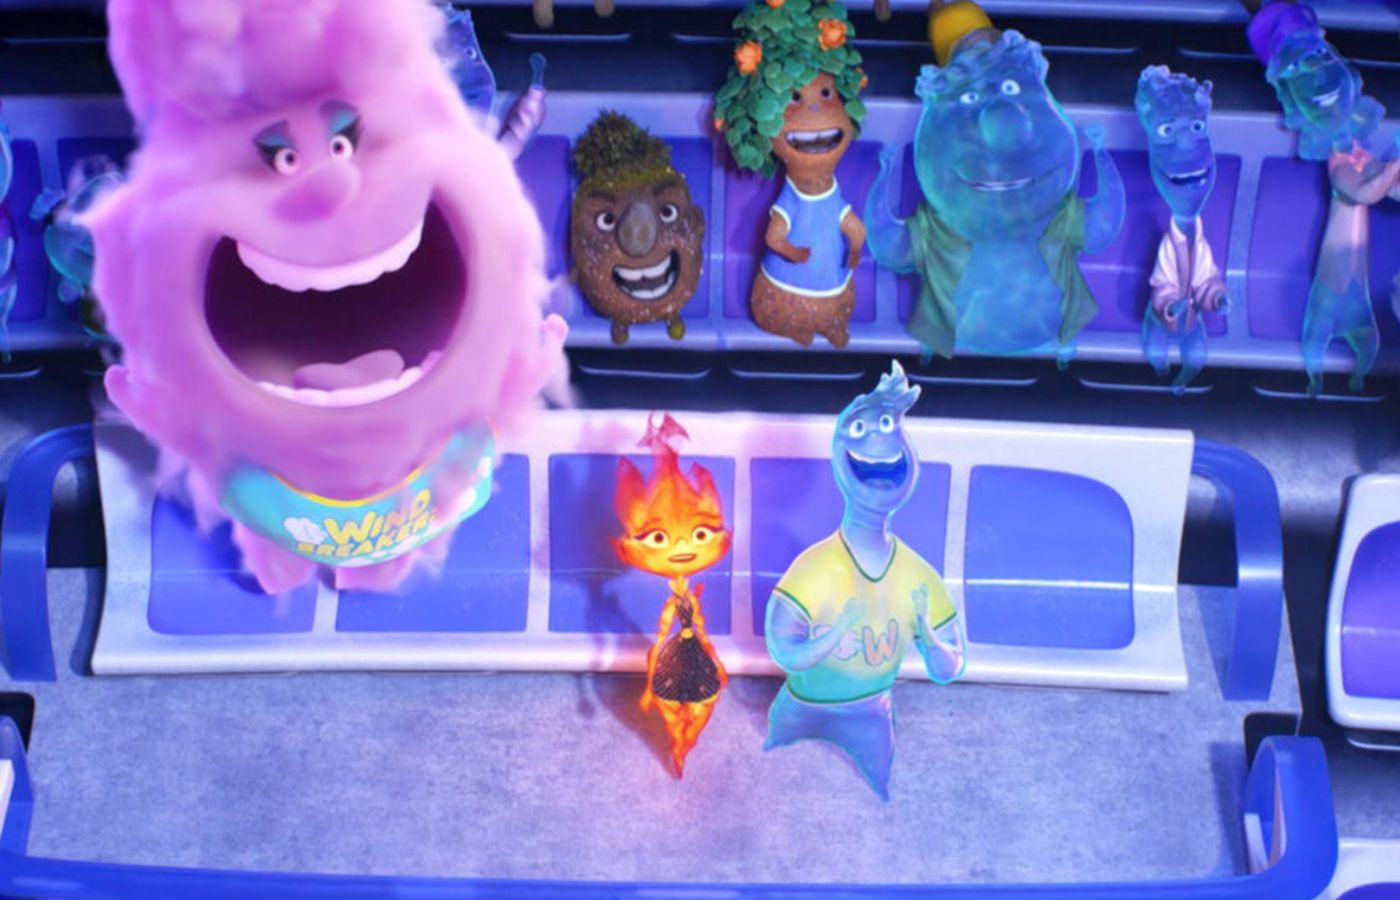 Elementos é o filme mais desafiador da história da Pixar, diz